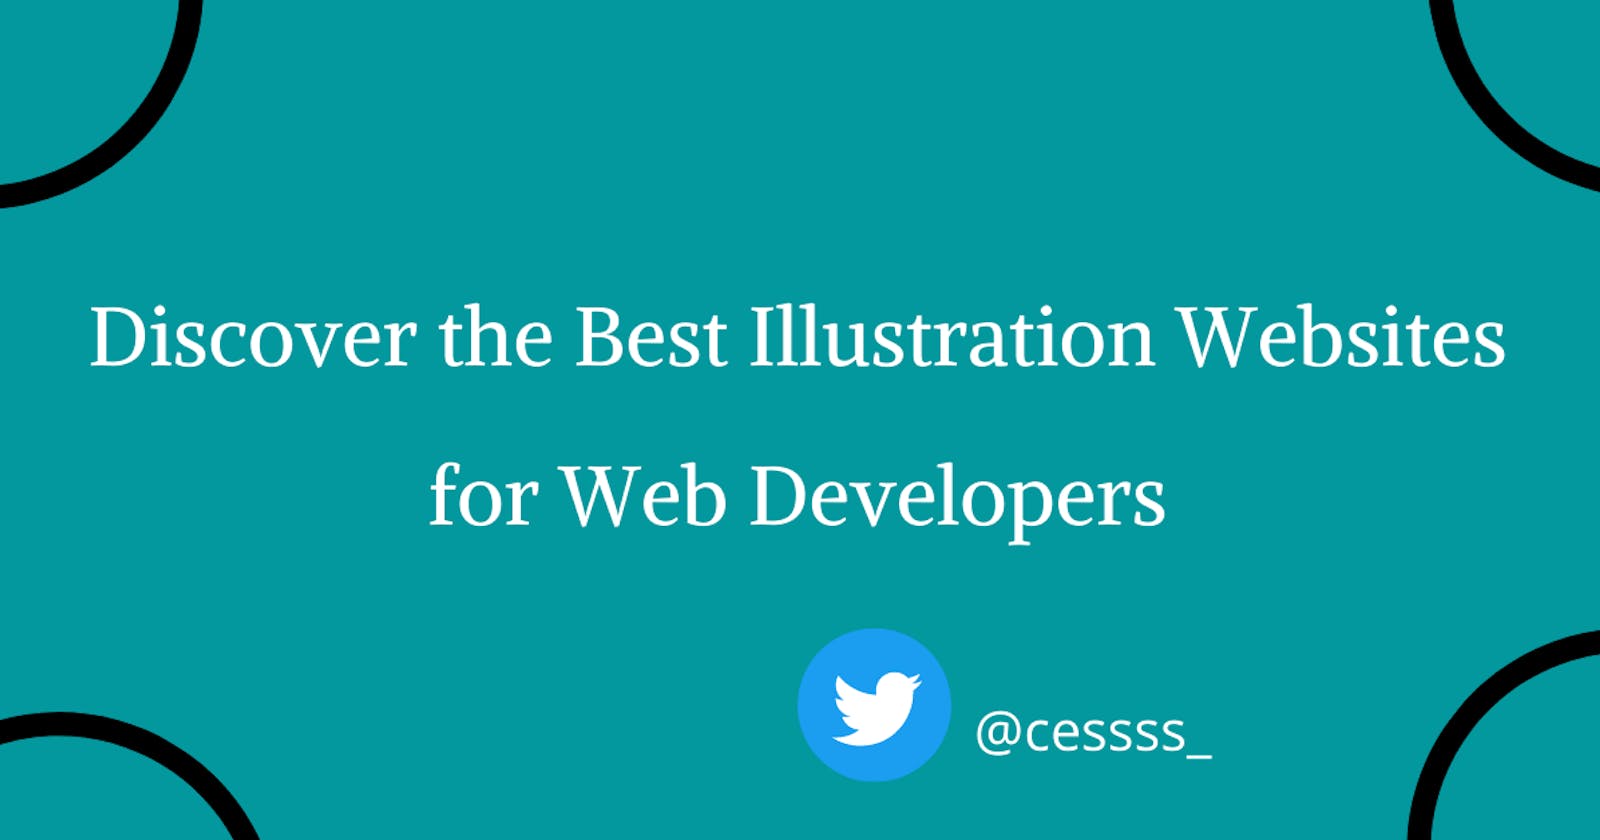 Discover the Best Illustration Websites for Web Developers.